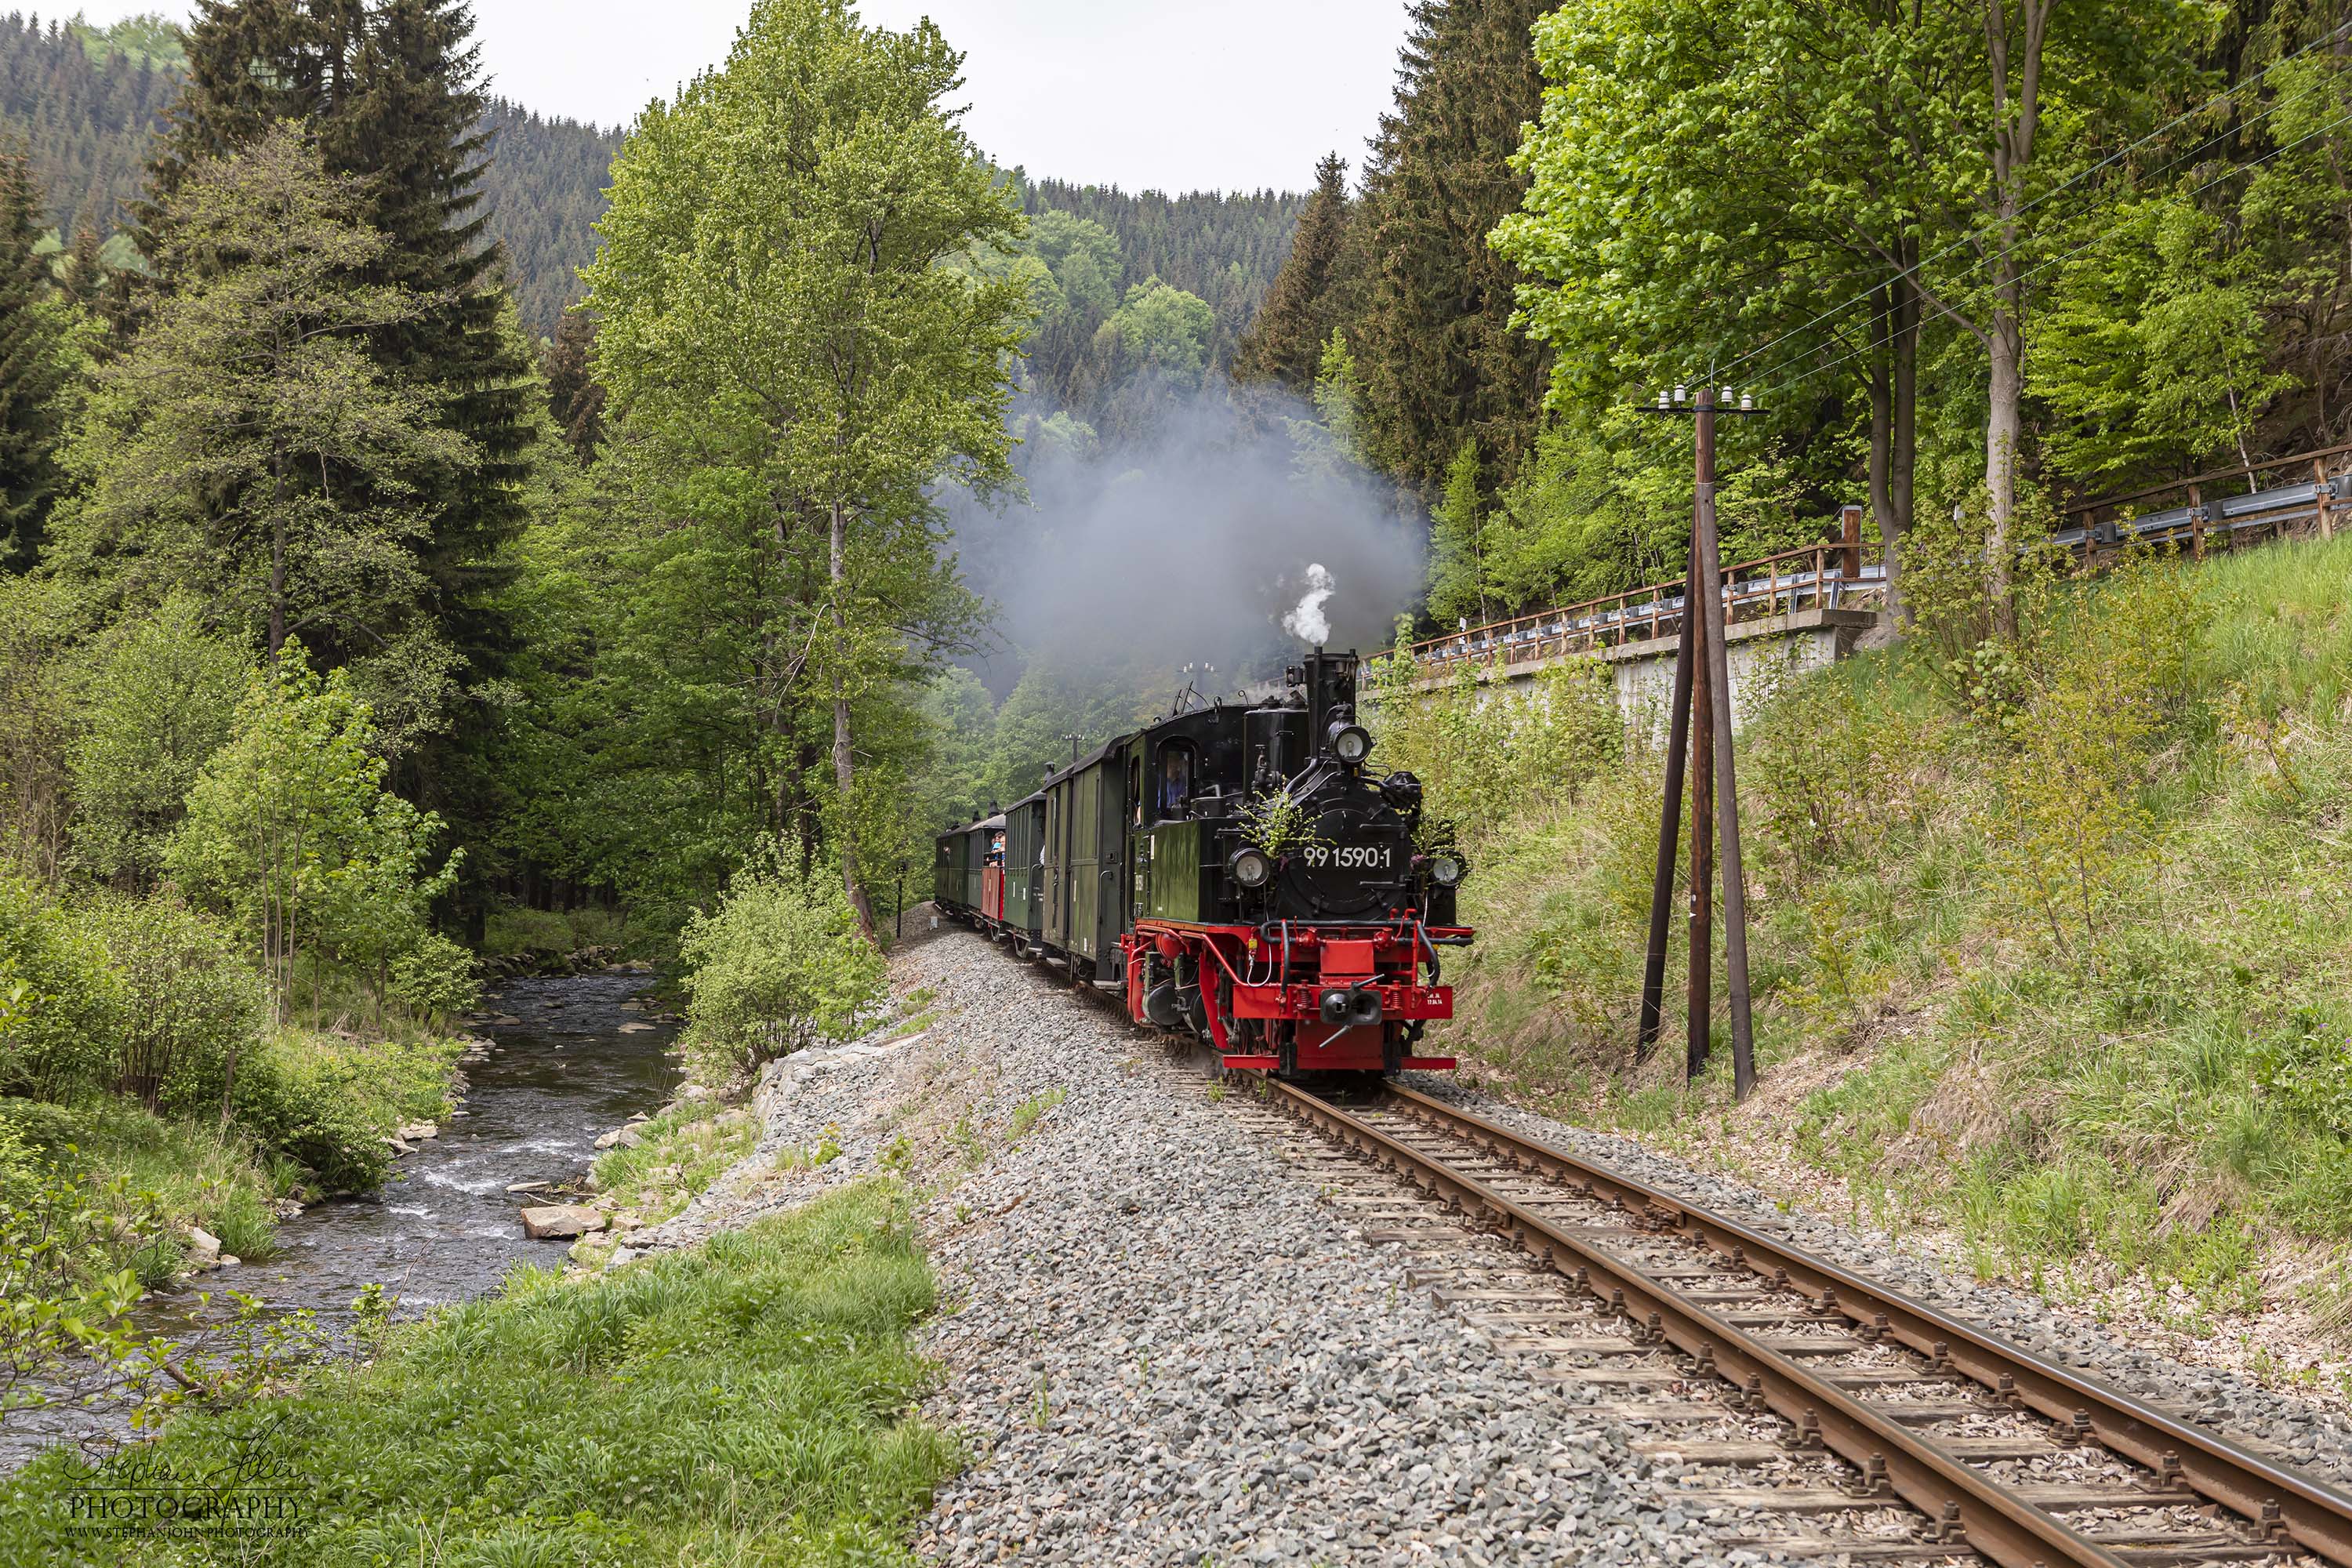 Zug P 14213 mit Lok 99 1590-1 von Steinbach nach Jöhstadt kurz vor dem Haltewpunkt Forellenhof